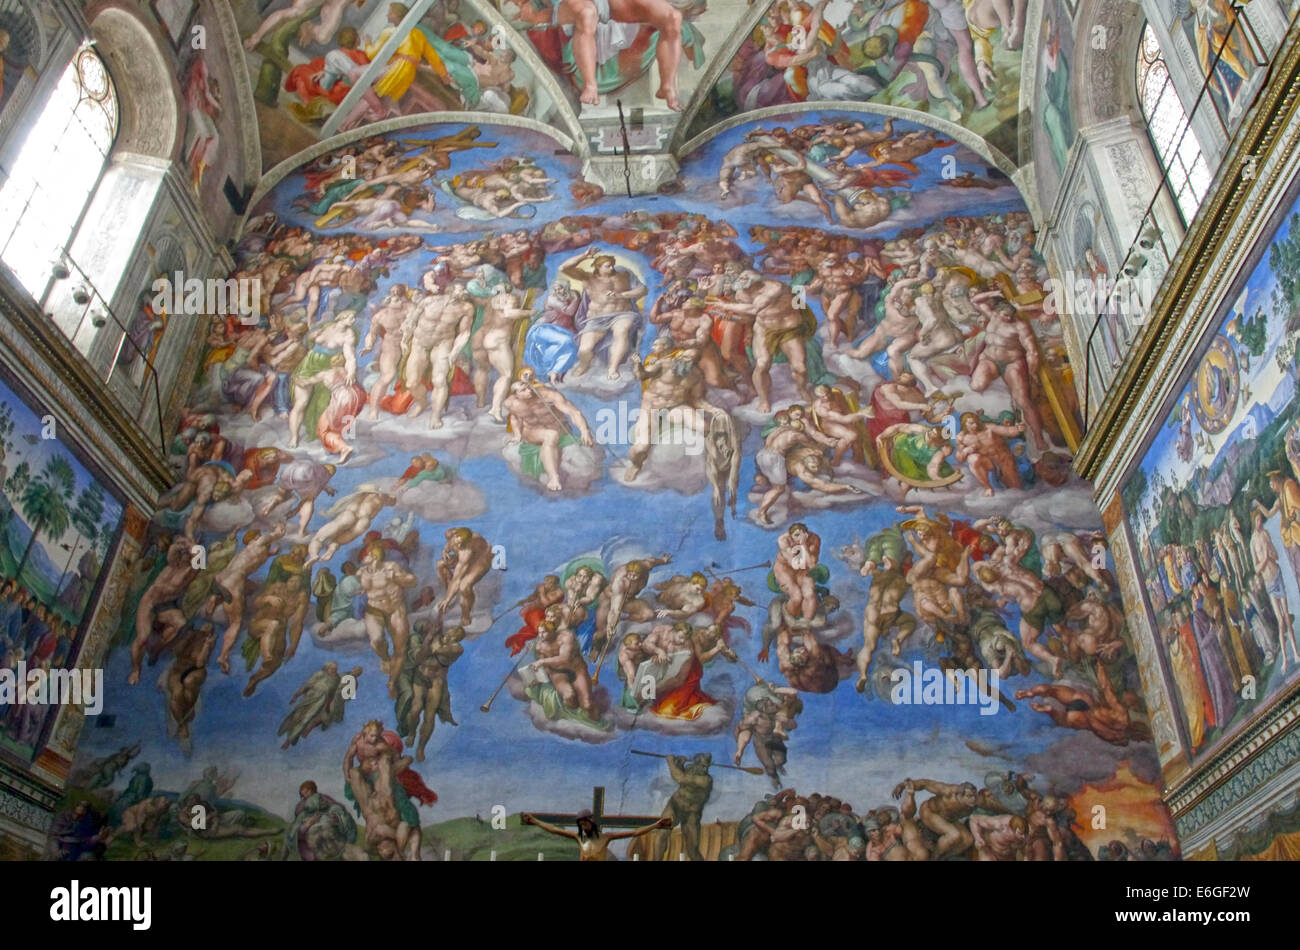 Tripadvisor, Le Jugement dernier : spectacle immersif dans la chapelle  Sixtine fourni par Giudizio Universale. Michelangelo and the Secrets of the  Sistine Chapel